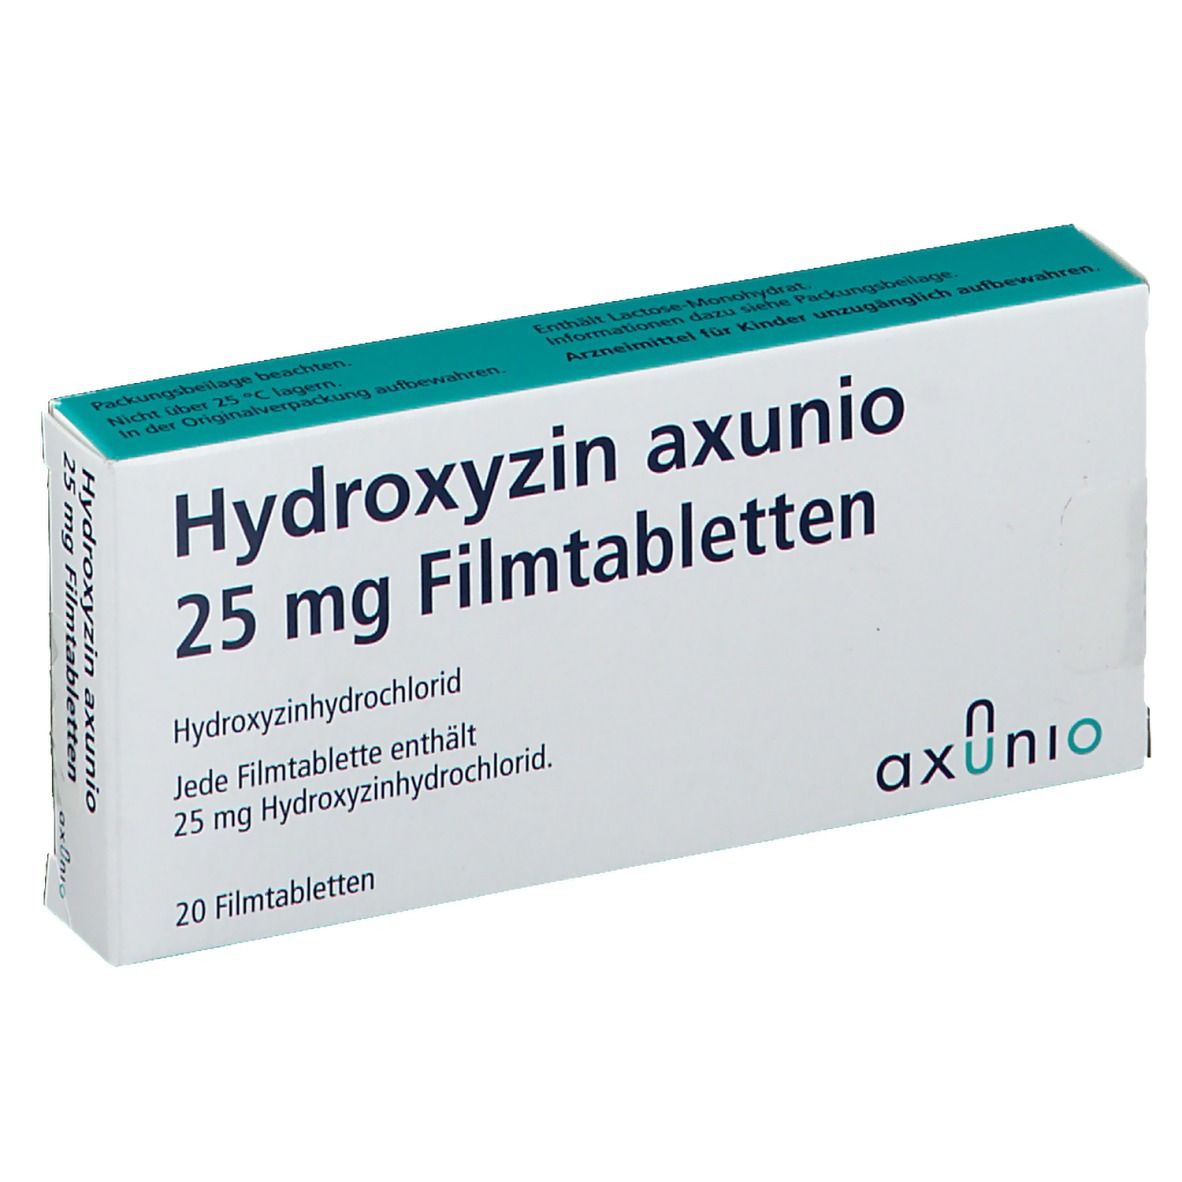 Hydroxyzin axunio 25 mg